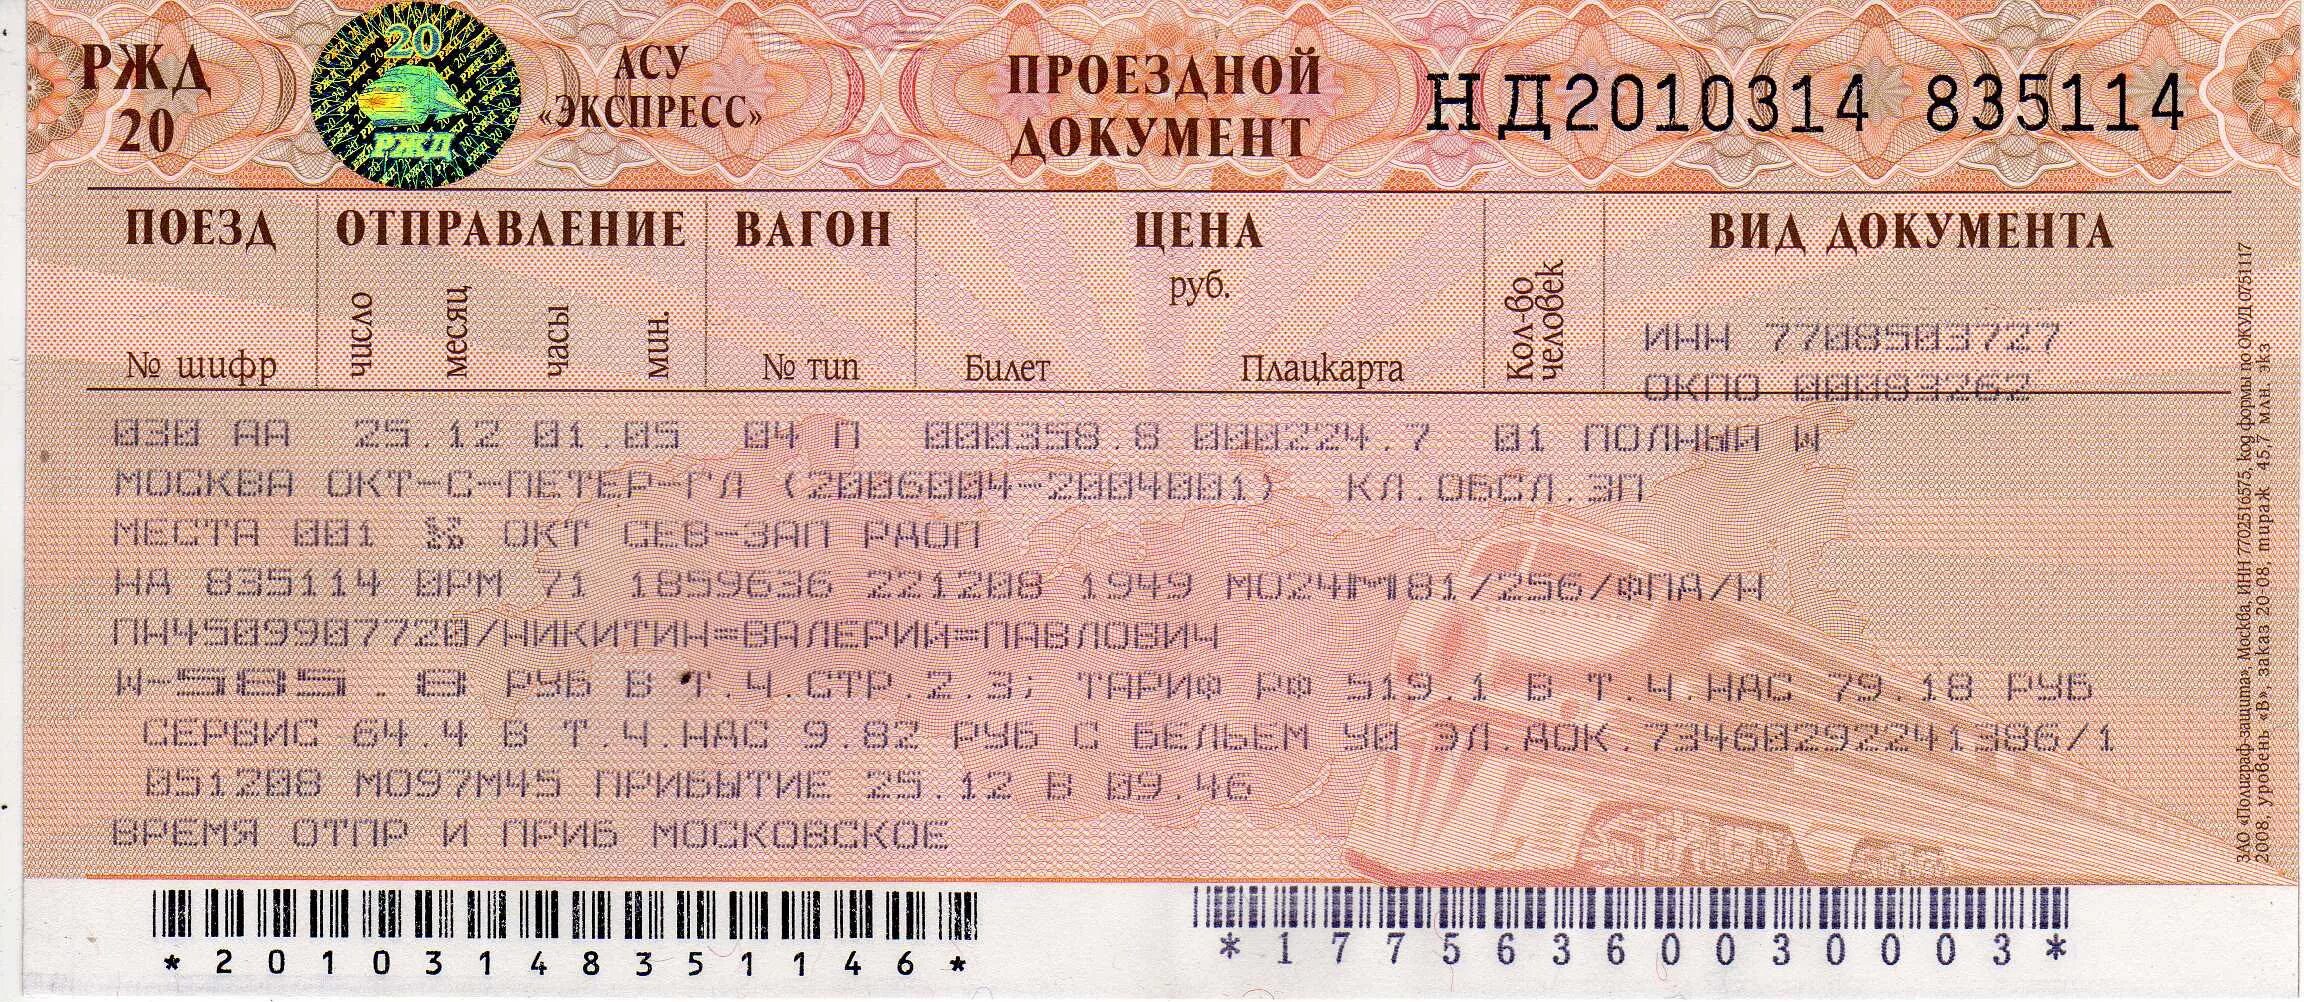 Сидячие билеты на поезд ржд. Ж/Д билеты. Билеты РЖД. Билет на поезд. Проездной документ.